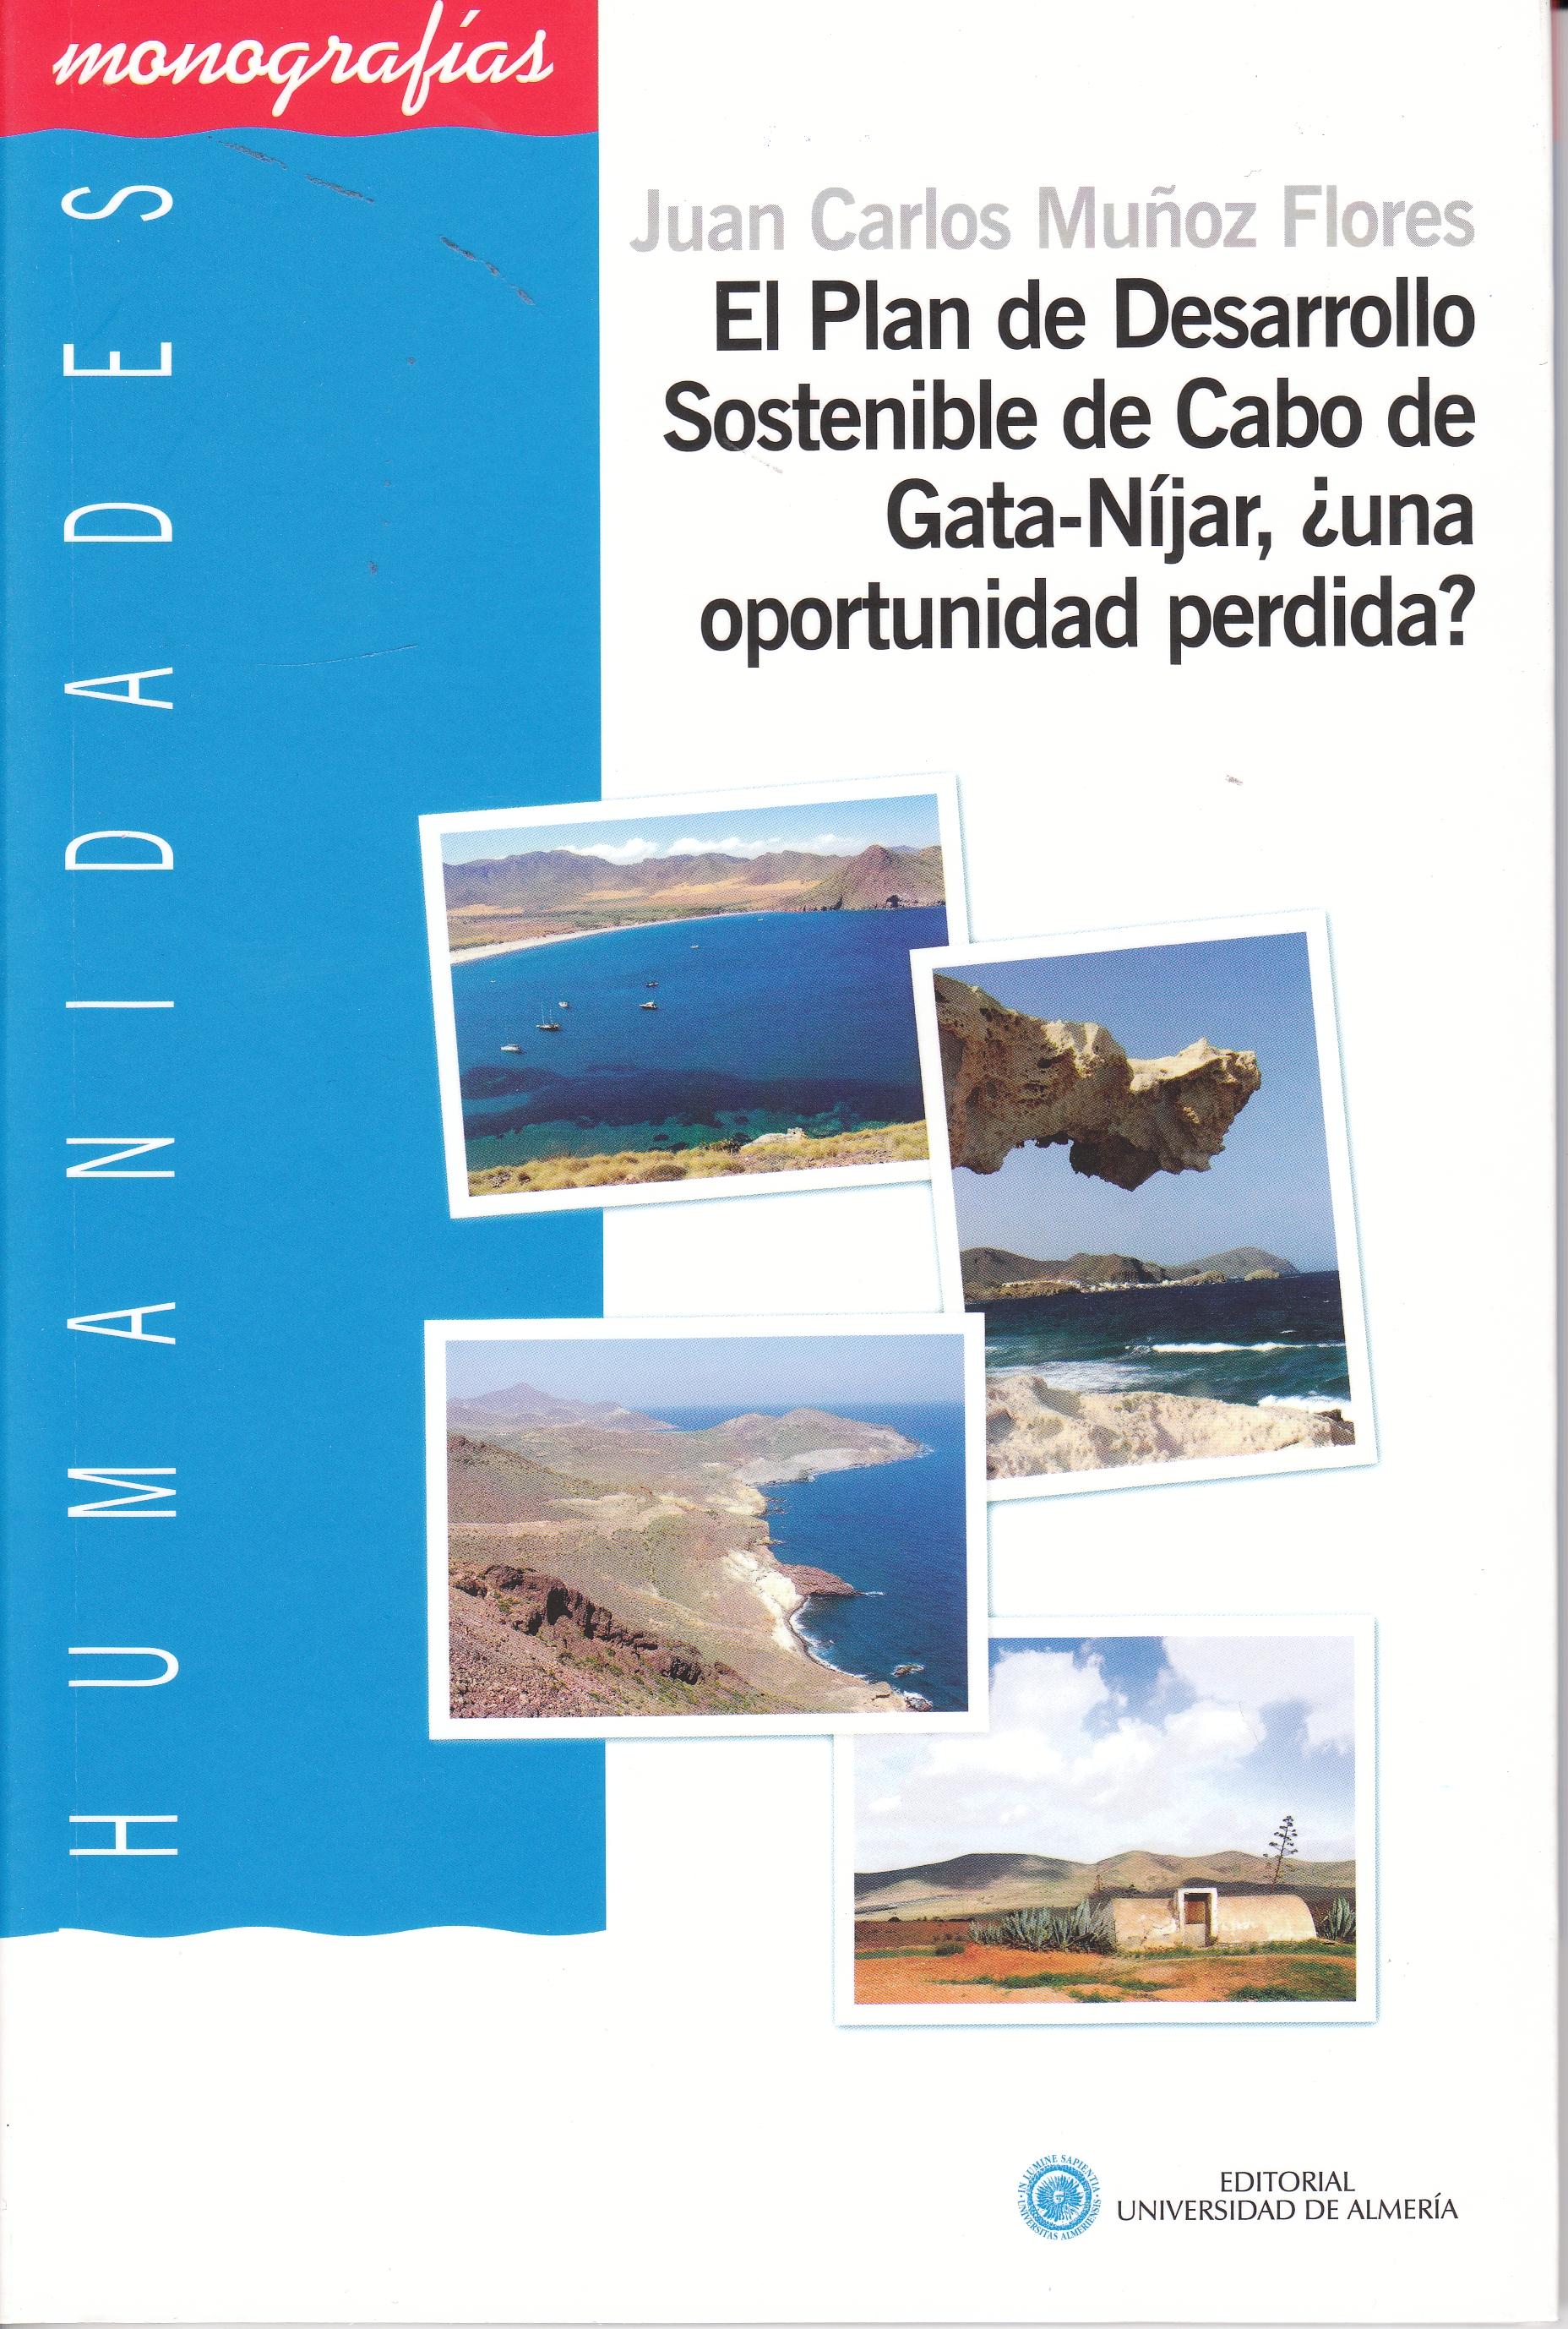 El Plan de Desarrollo Sostenible de Cabo de Gata- Níjar "¿Una oprtunidad perdida?"